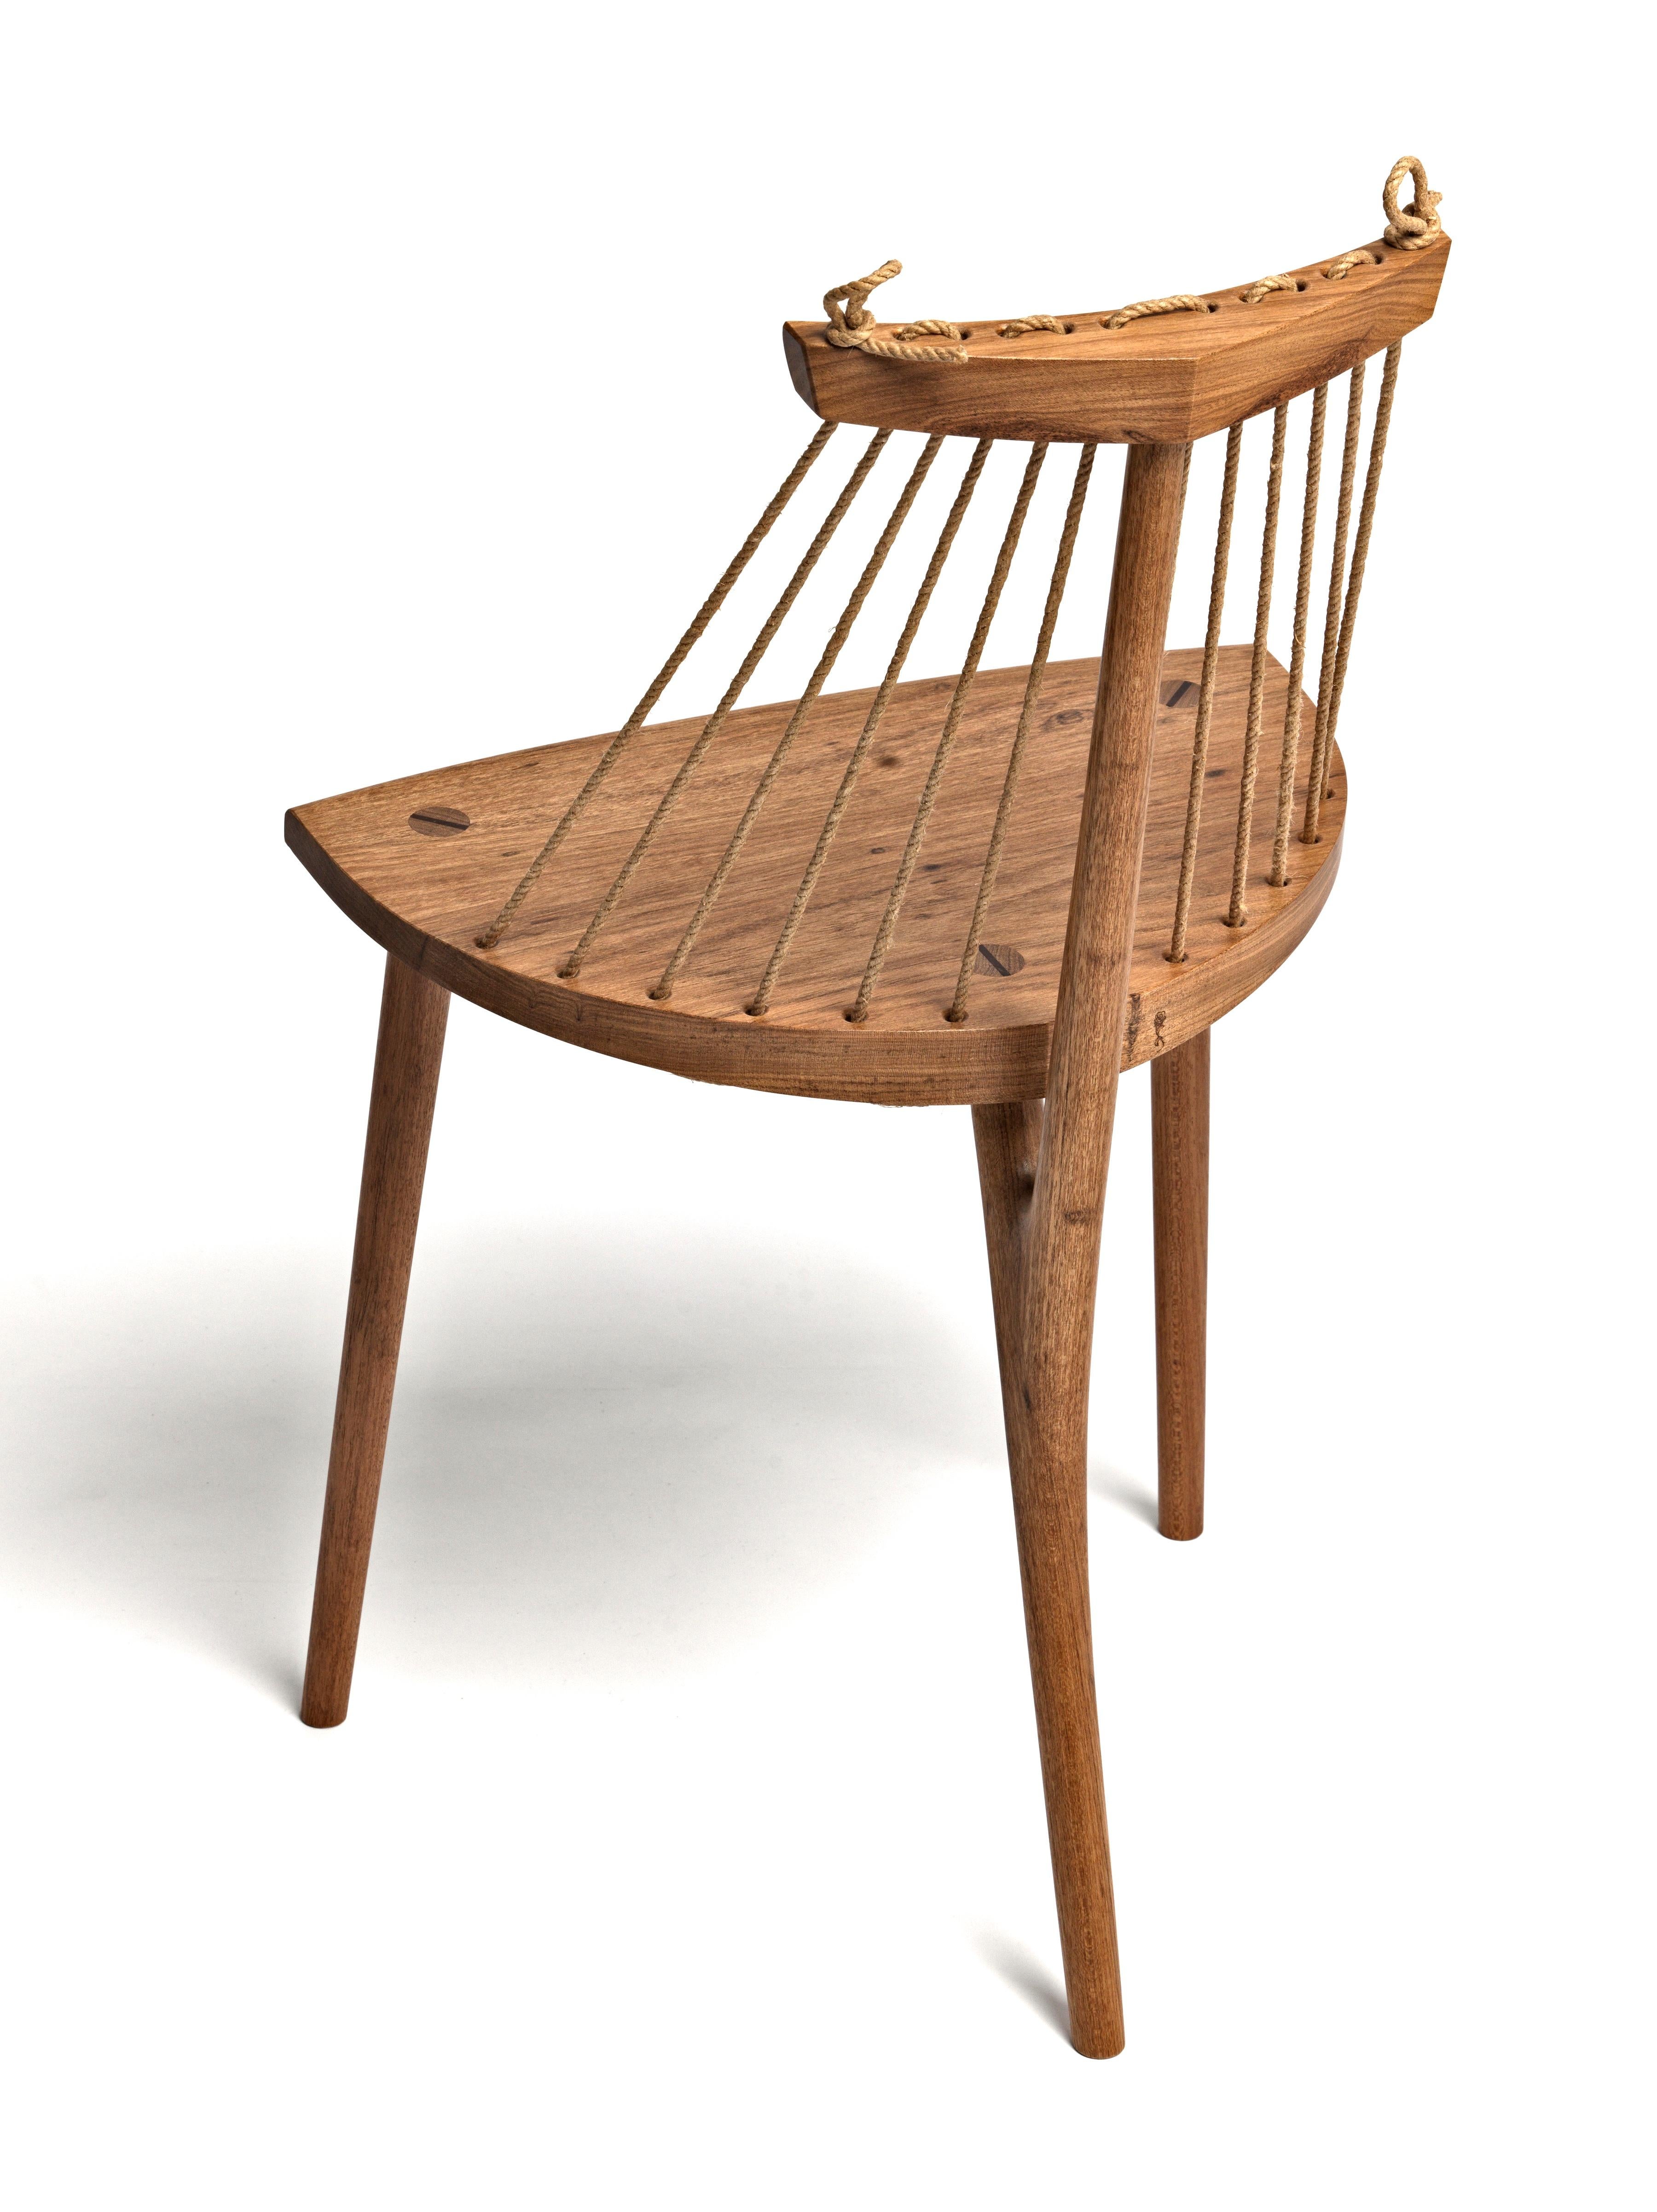 Dieser zeitgenössische Stuhl ist ein dreibeiniges, bequemes und elegantes Möbelstück, das in der Werkstatt des Künstlers aus tropischem brasilianischem Hartholz und Naturfaserkordel gefertigt wird.

Seine Einzigartigkeit geht Hand in Hand mit seiner